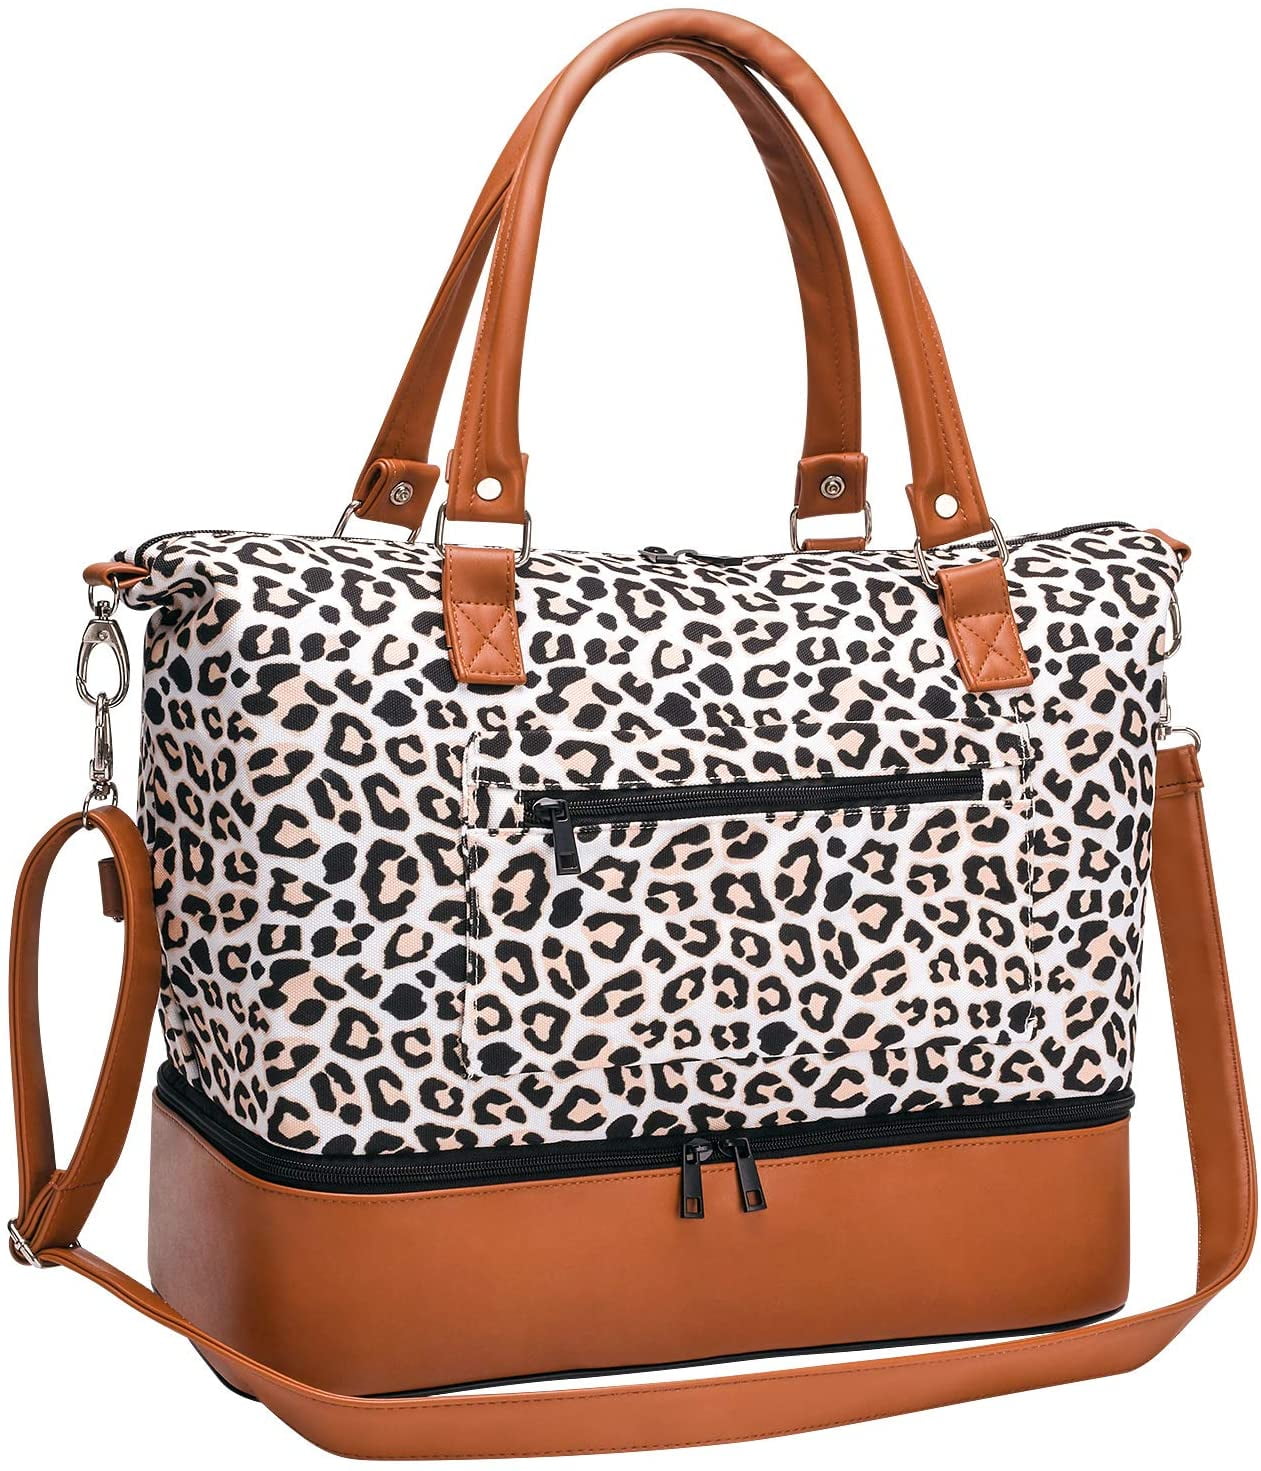 Gemonogrammeerde Cheetah Overnight Duffel Bag Gemonogrammeerde handbagage MonogramMed Brown Leopard Weekender Bag Tassen & portemonnees Bagage & Reizen Weekendtassen Gepersonaliseerde 